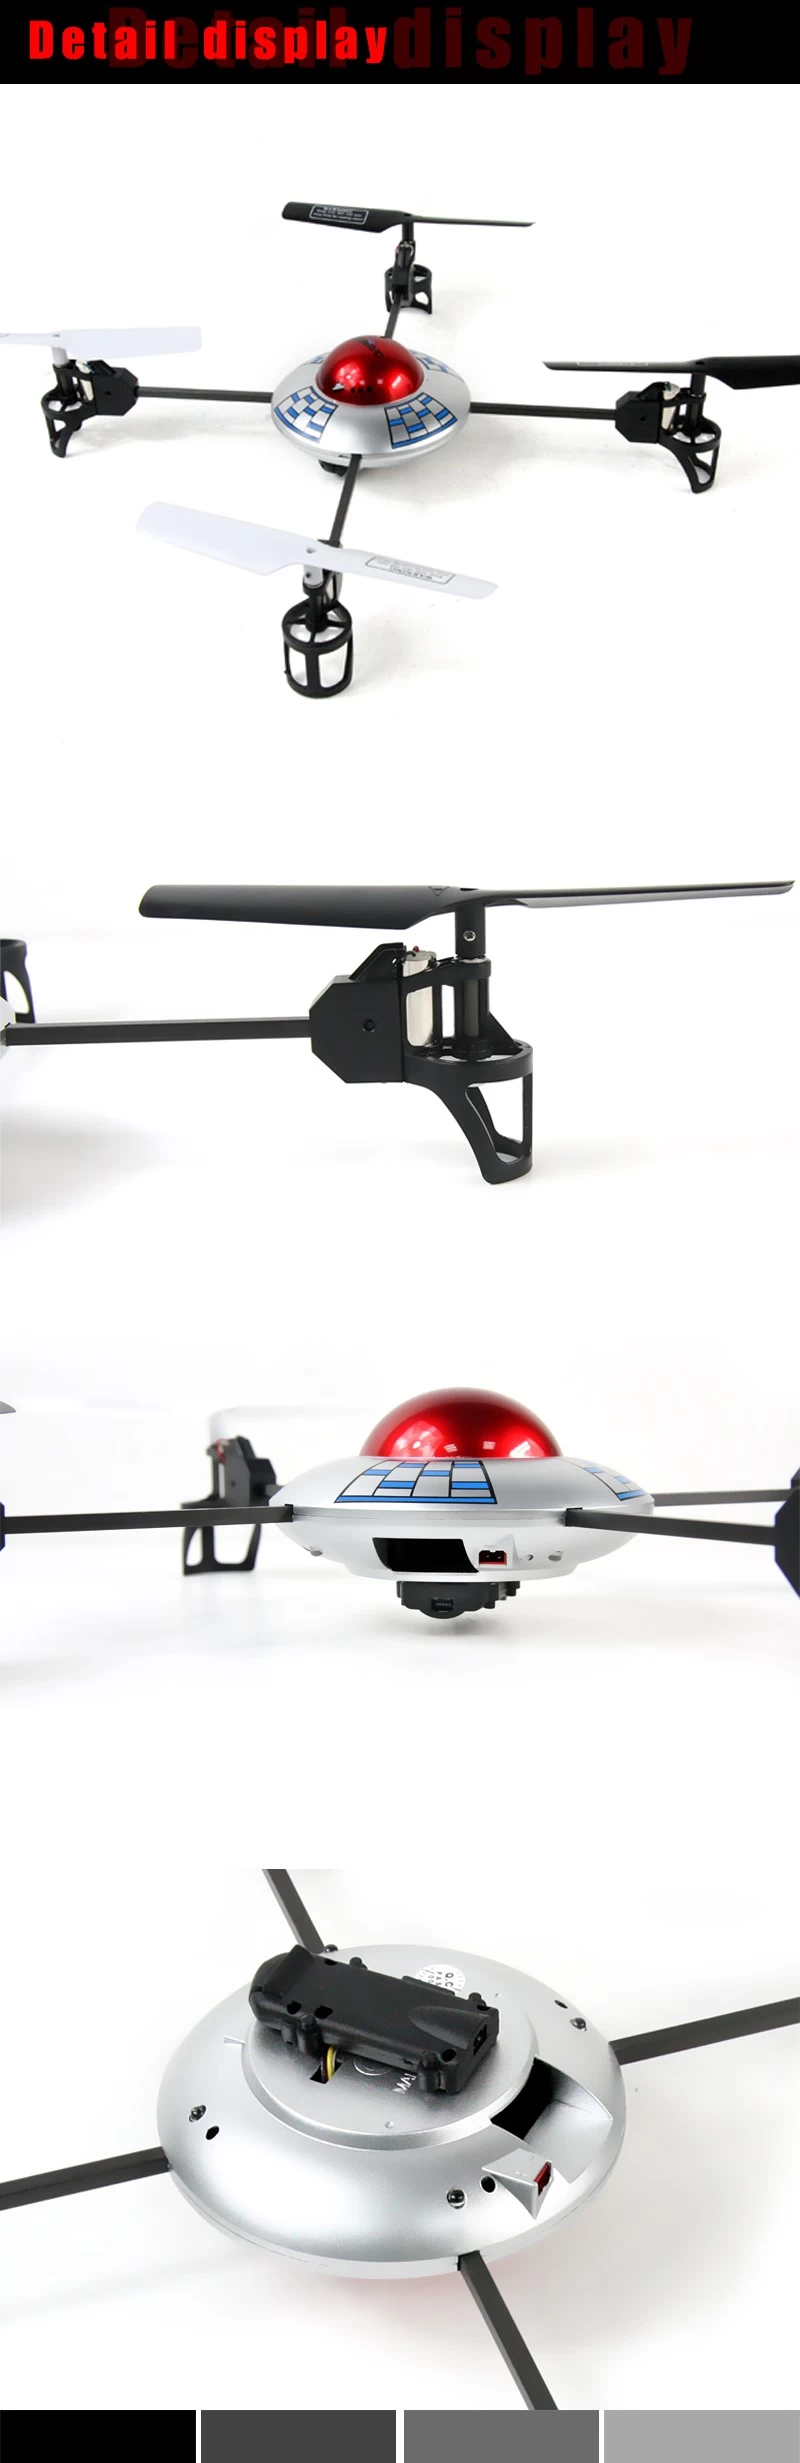 Quadcopter Camera,rc quadcopter,drone